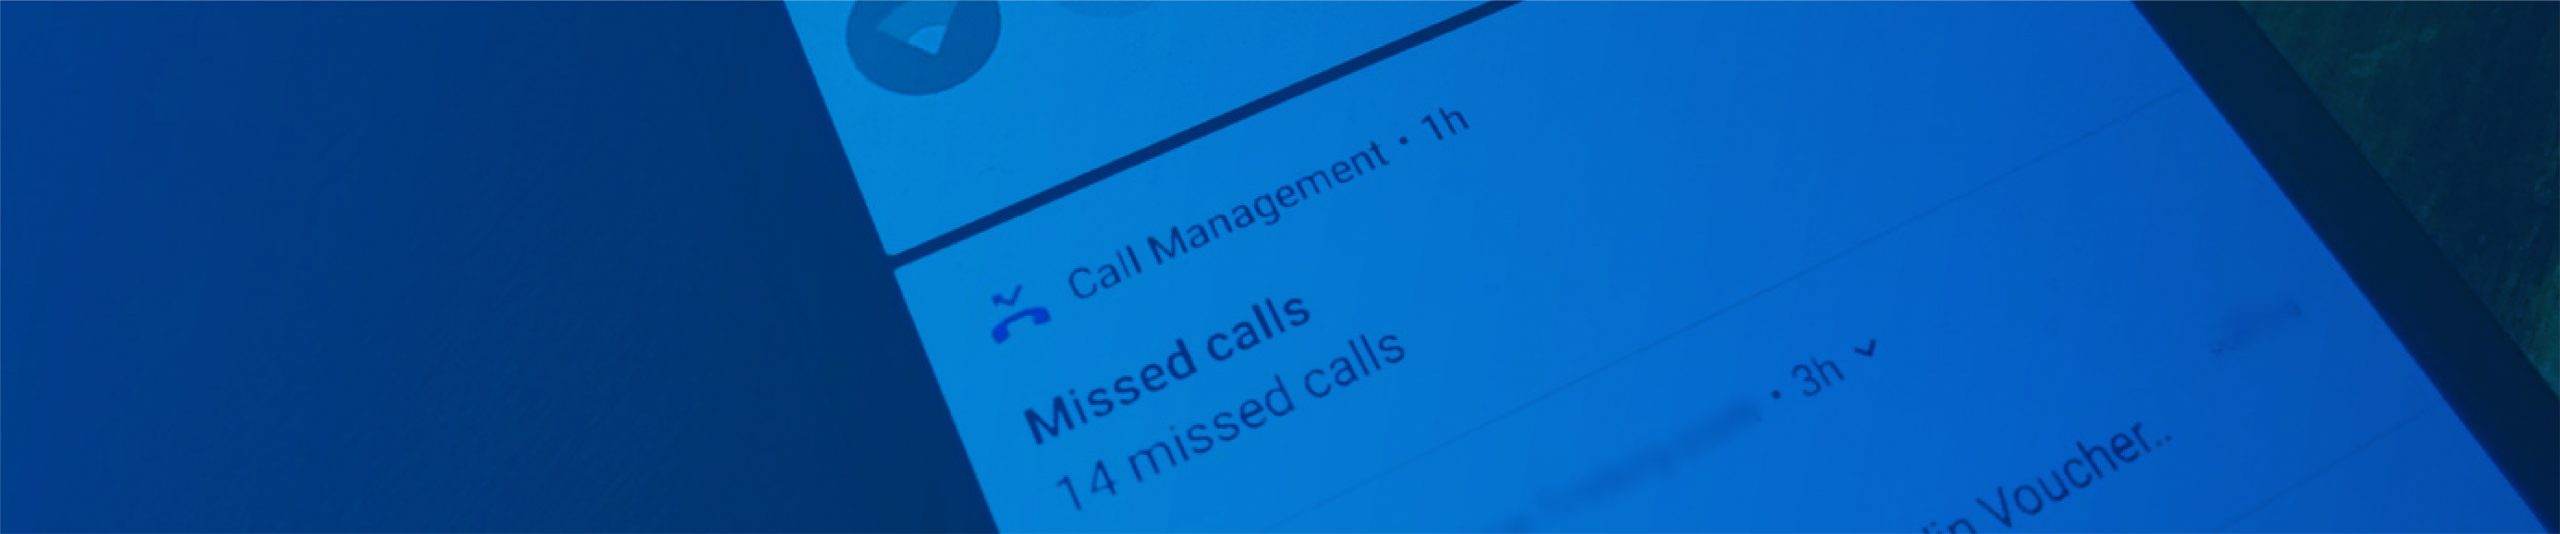 Missed Call Alert Solution Header image